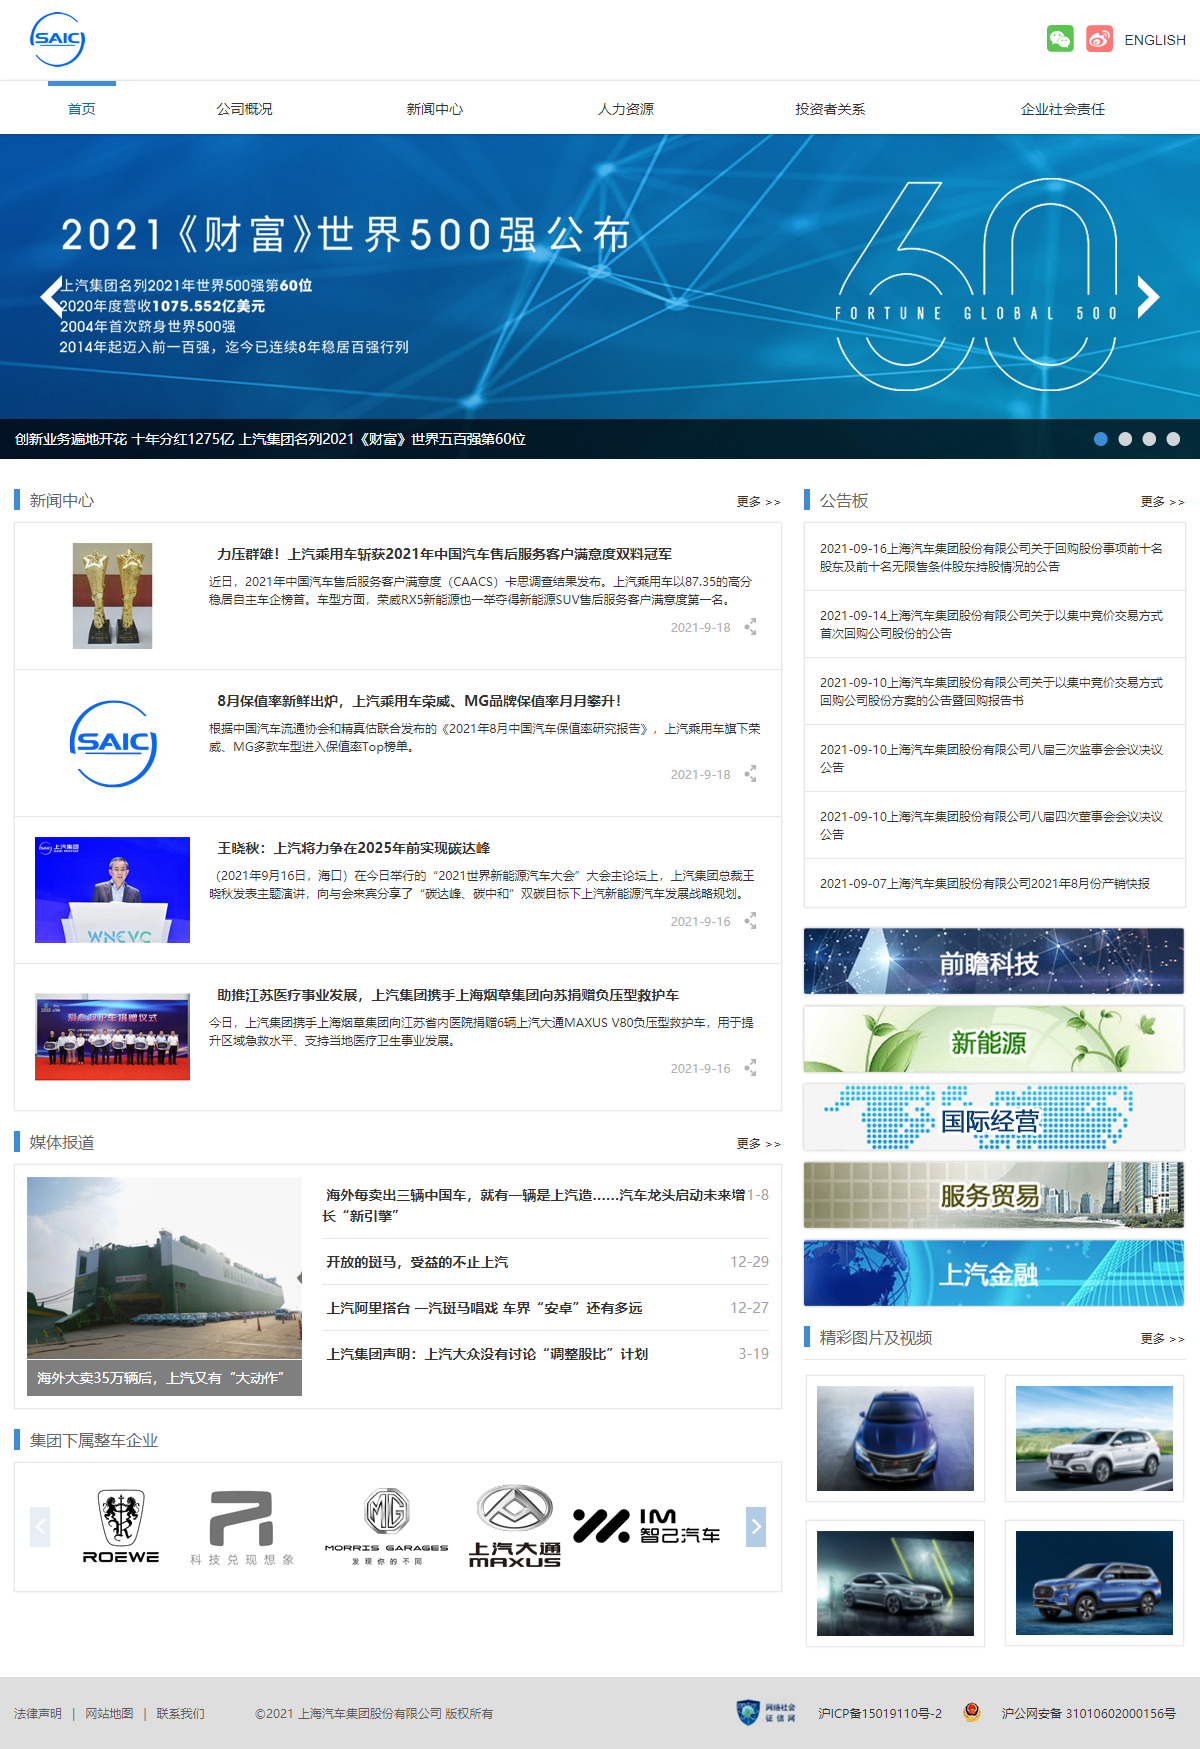 上海汽车集团股份有限公司网站案例